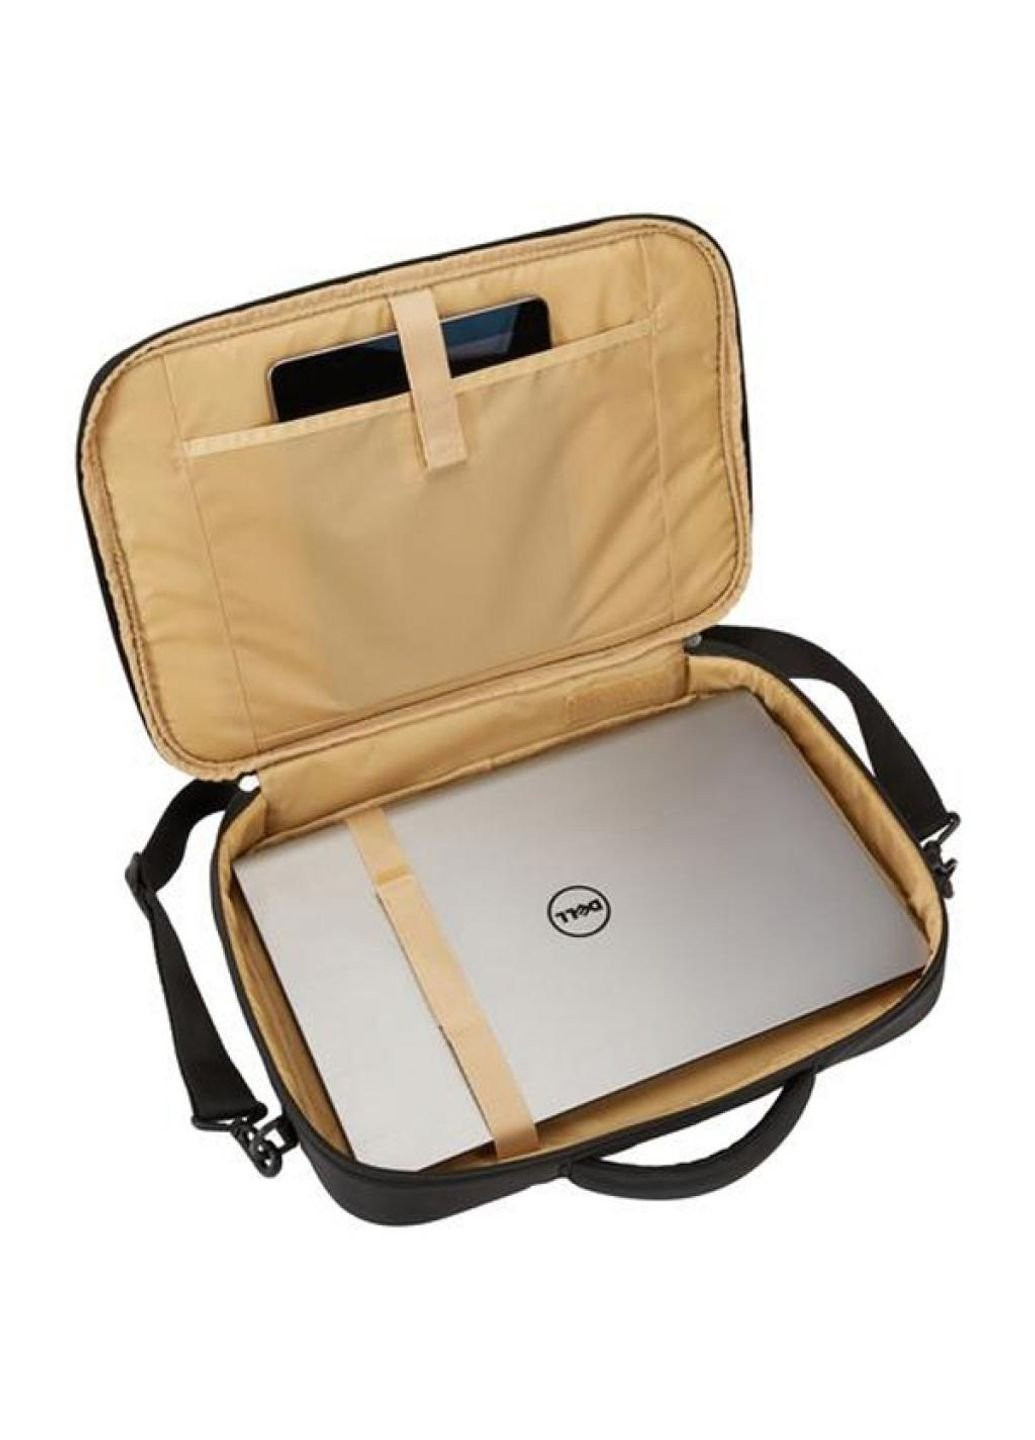 Сумка для ноутбука 15.6'' Briefcase PROPC- 116 Black (3204528) Case Logic (251881169)